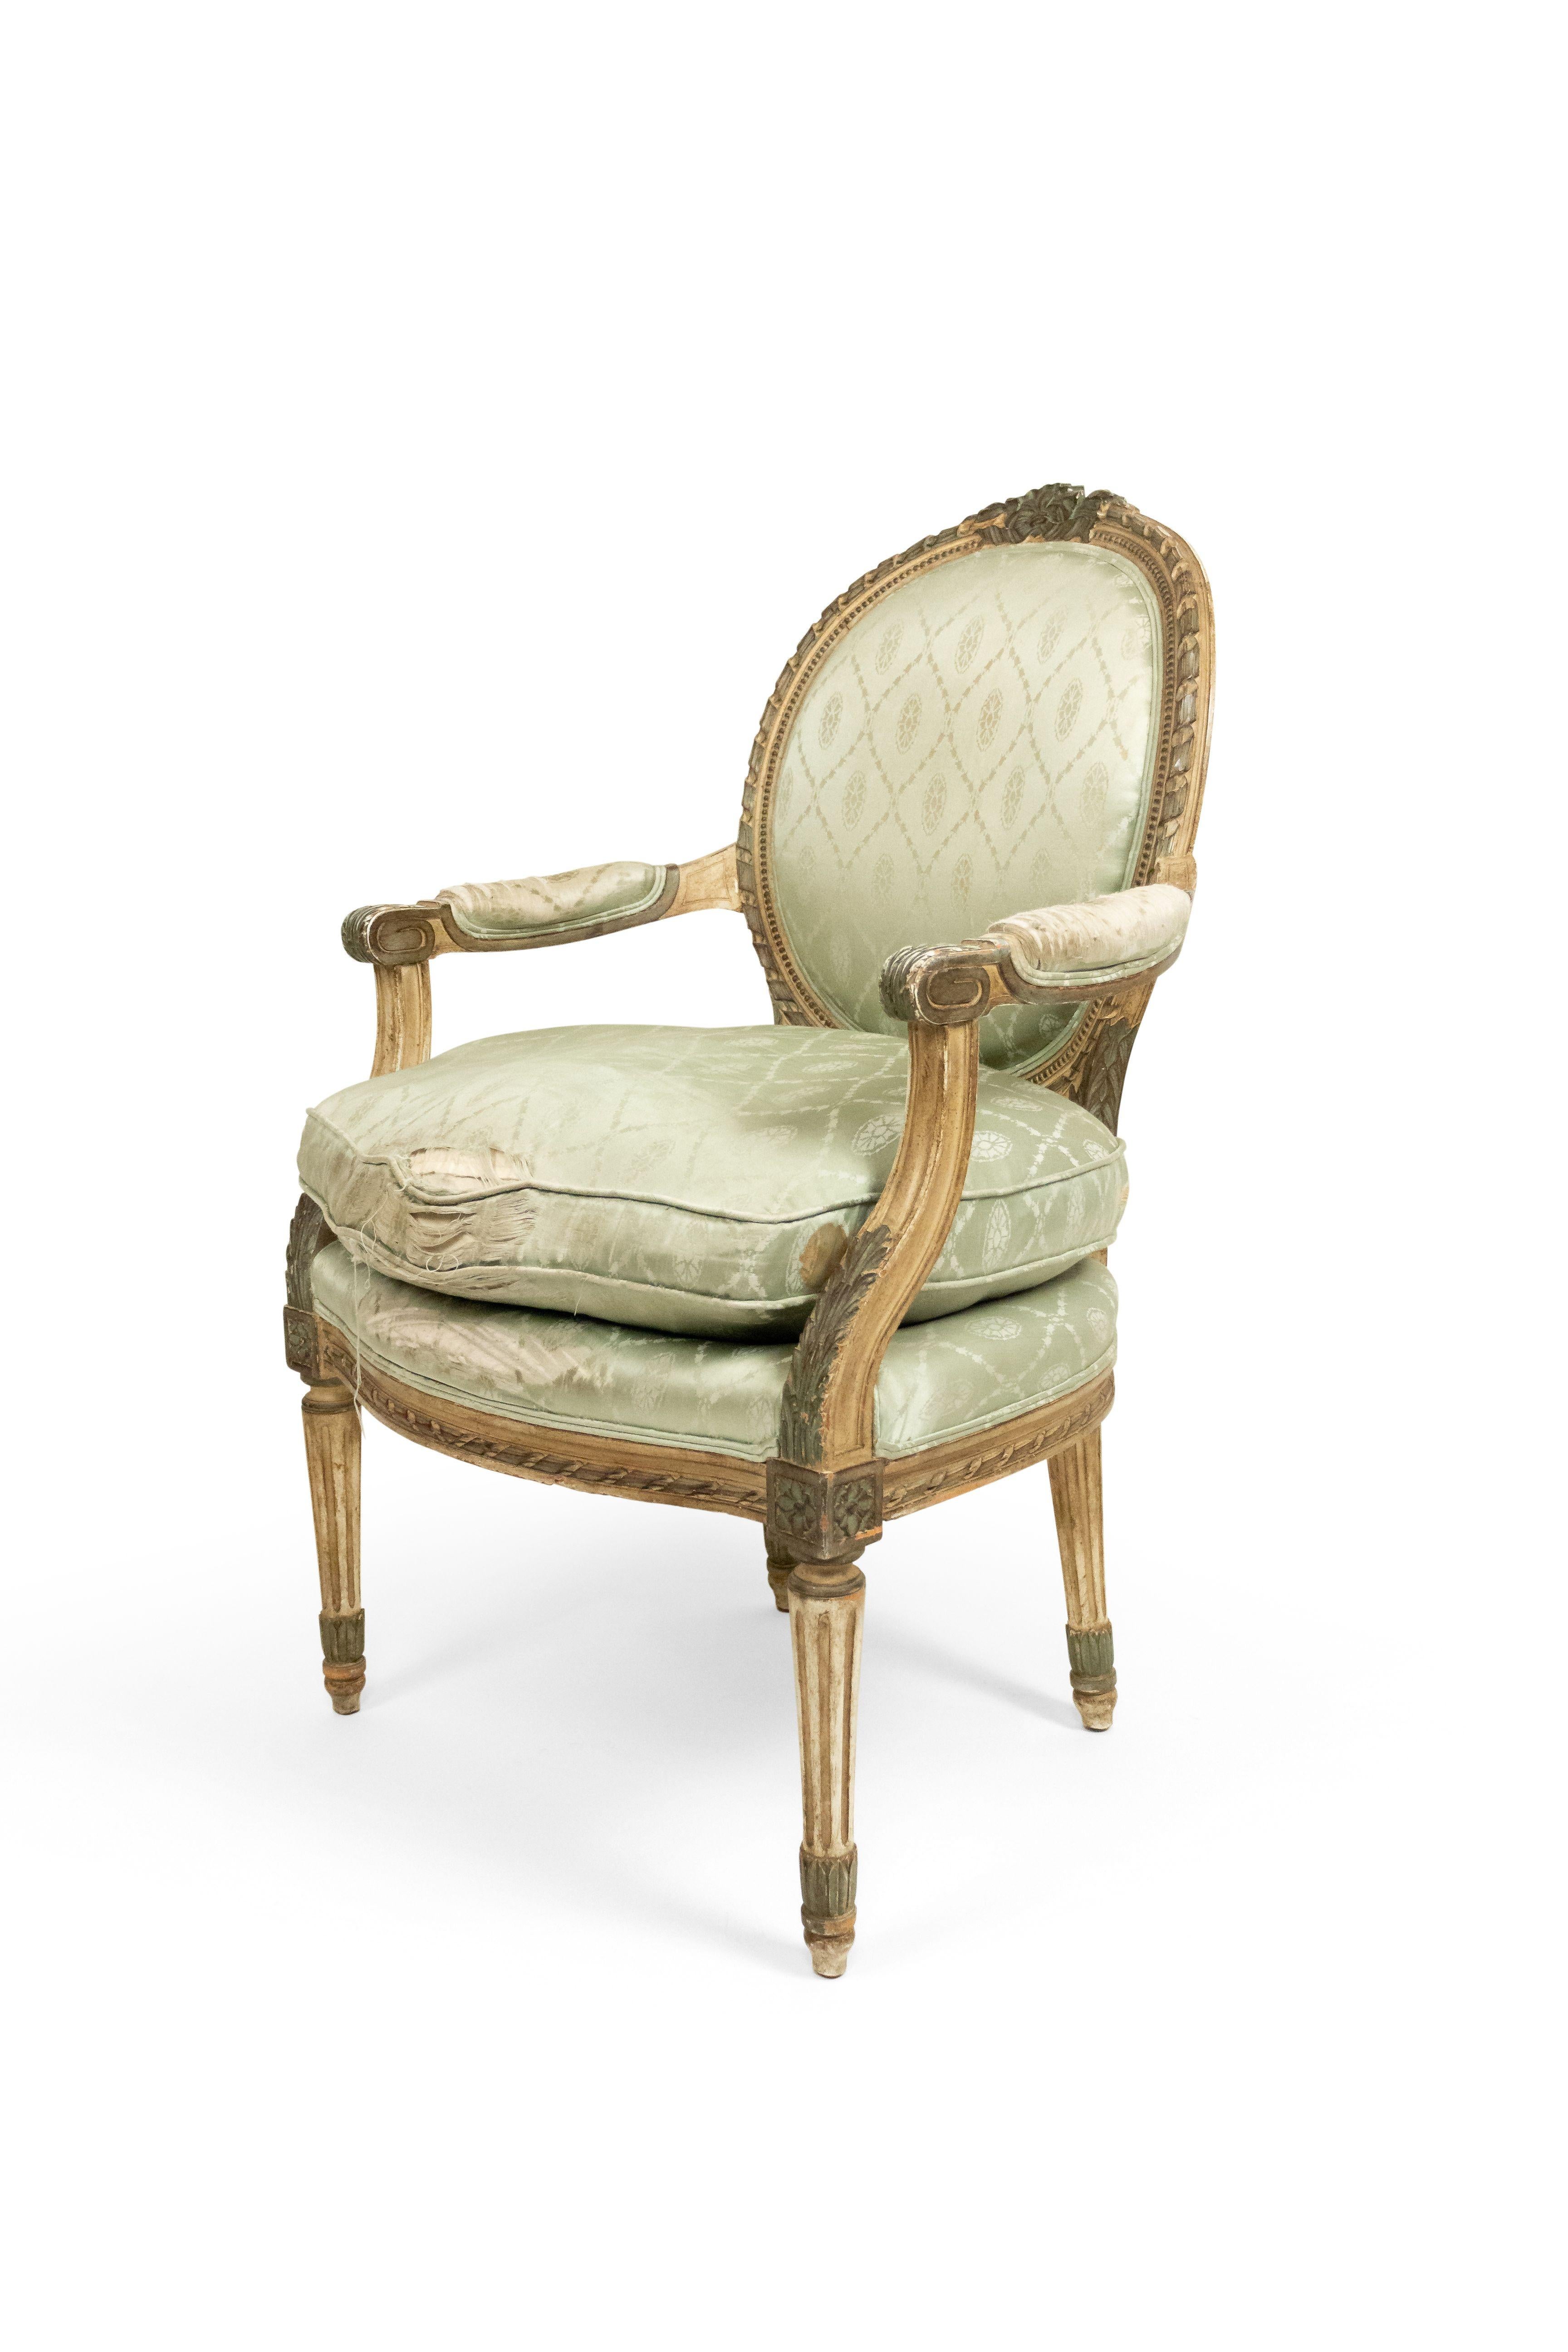 Paar französische Sessel im Louis-XVI-Stil (19.-20. Jh.), grau lackiert, mit ovaler Rückenlehne und blassgrüner Seidenpolsterung.